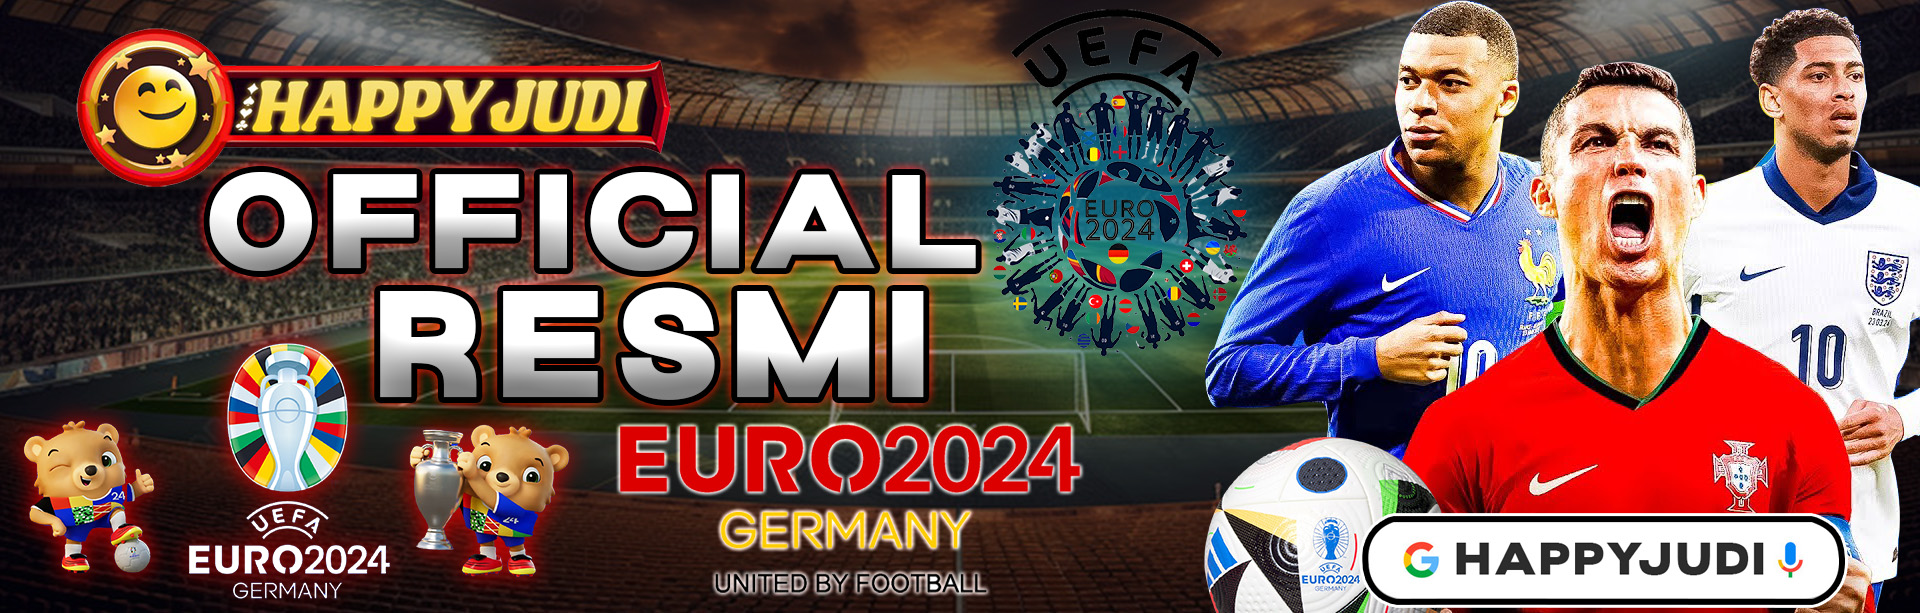 OFFICIAL EURO 2024